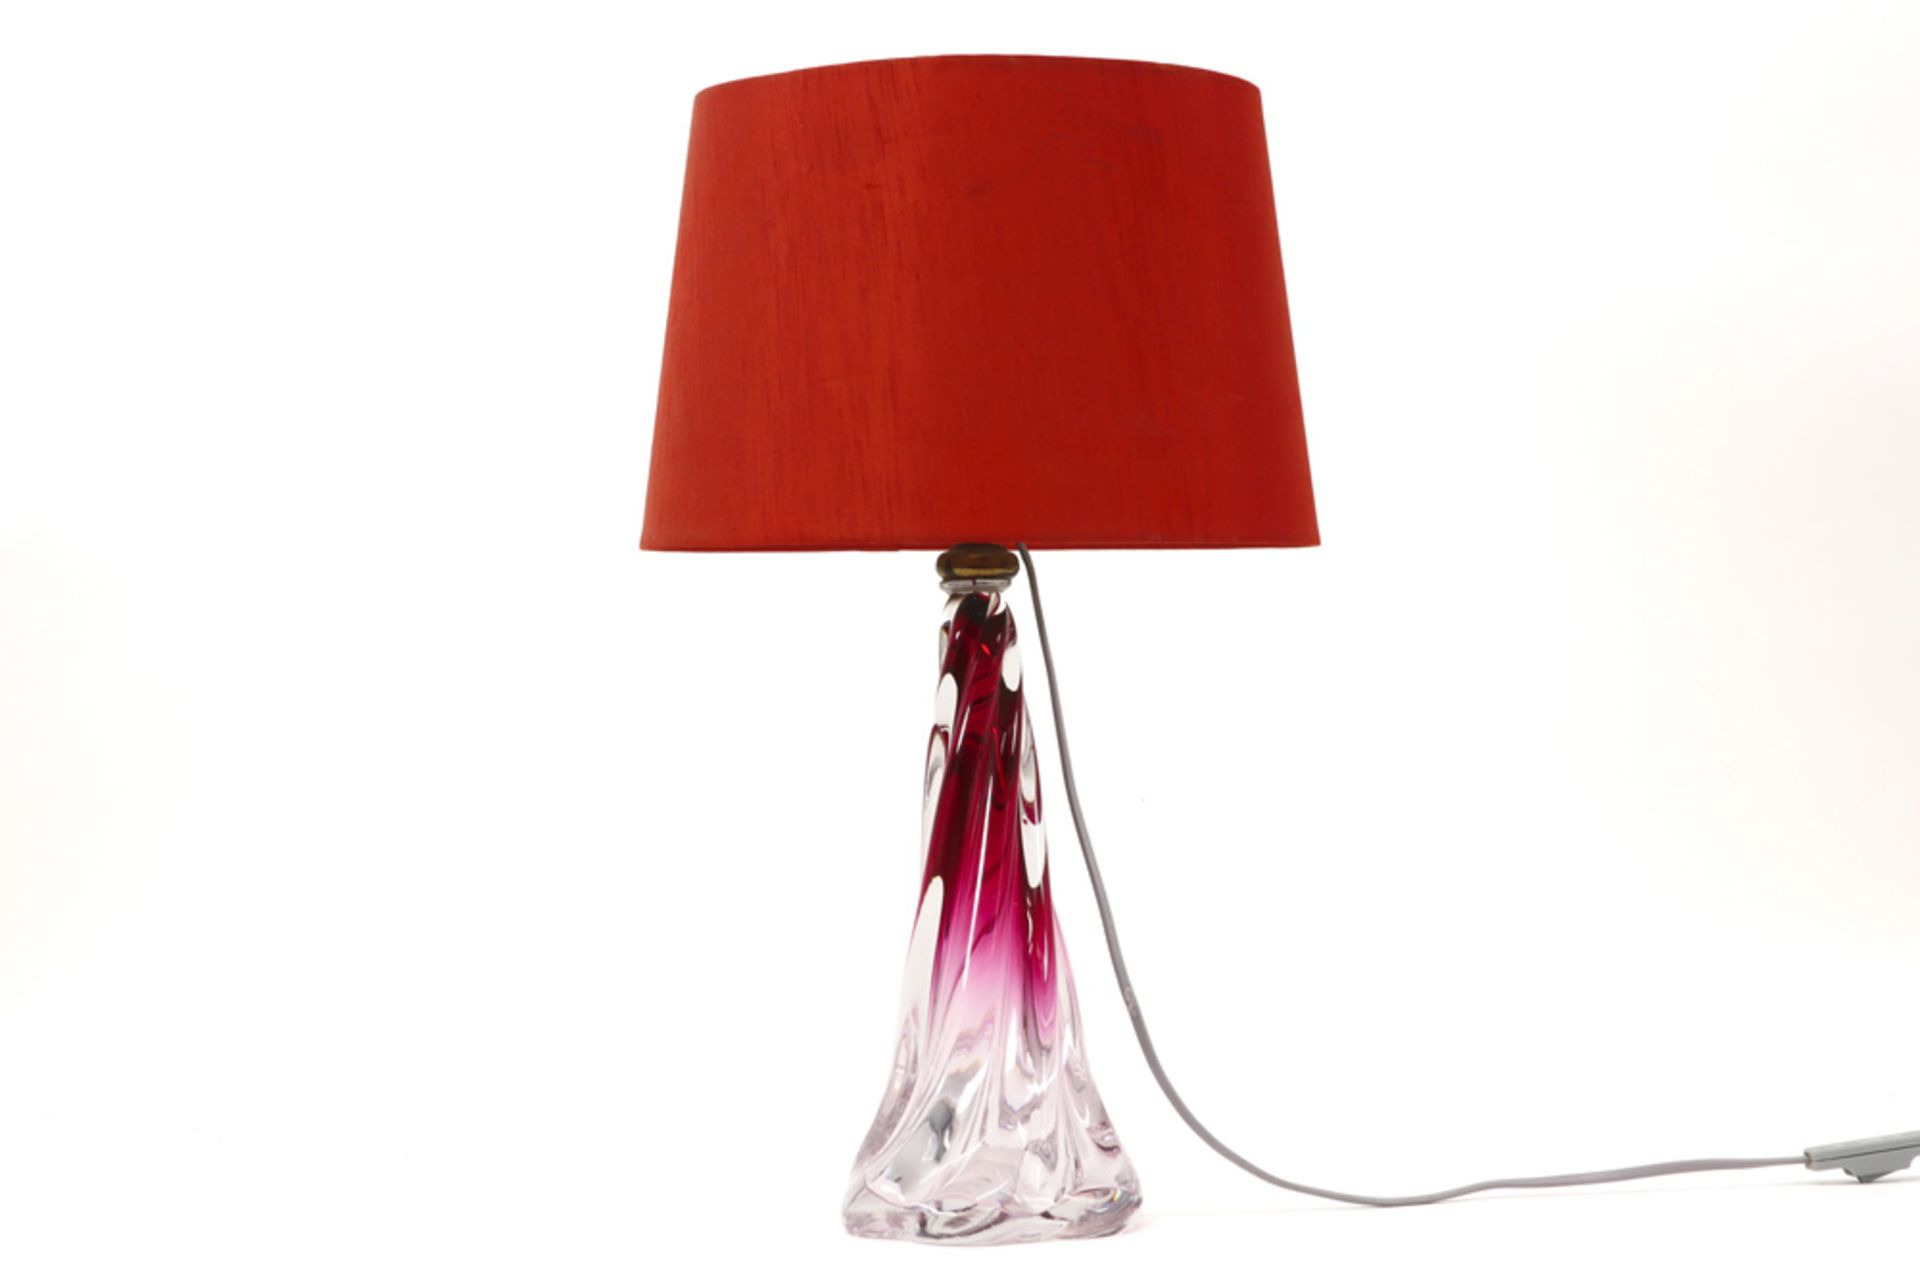 lamp with base in crystal VSL ||Lamp met getorste voet in deels rood gekleurd kristal Val-St-Lambert